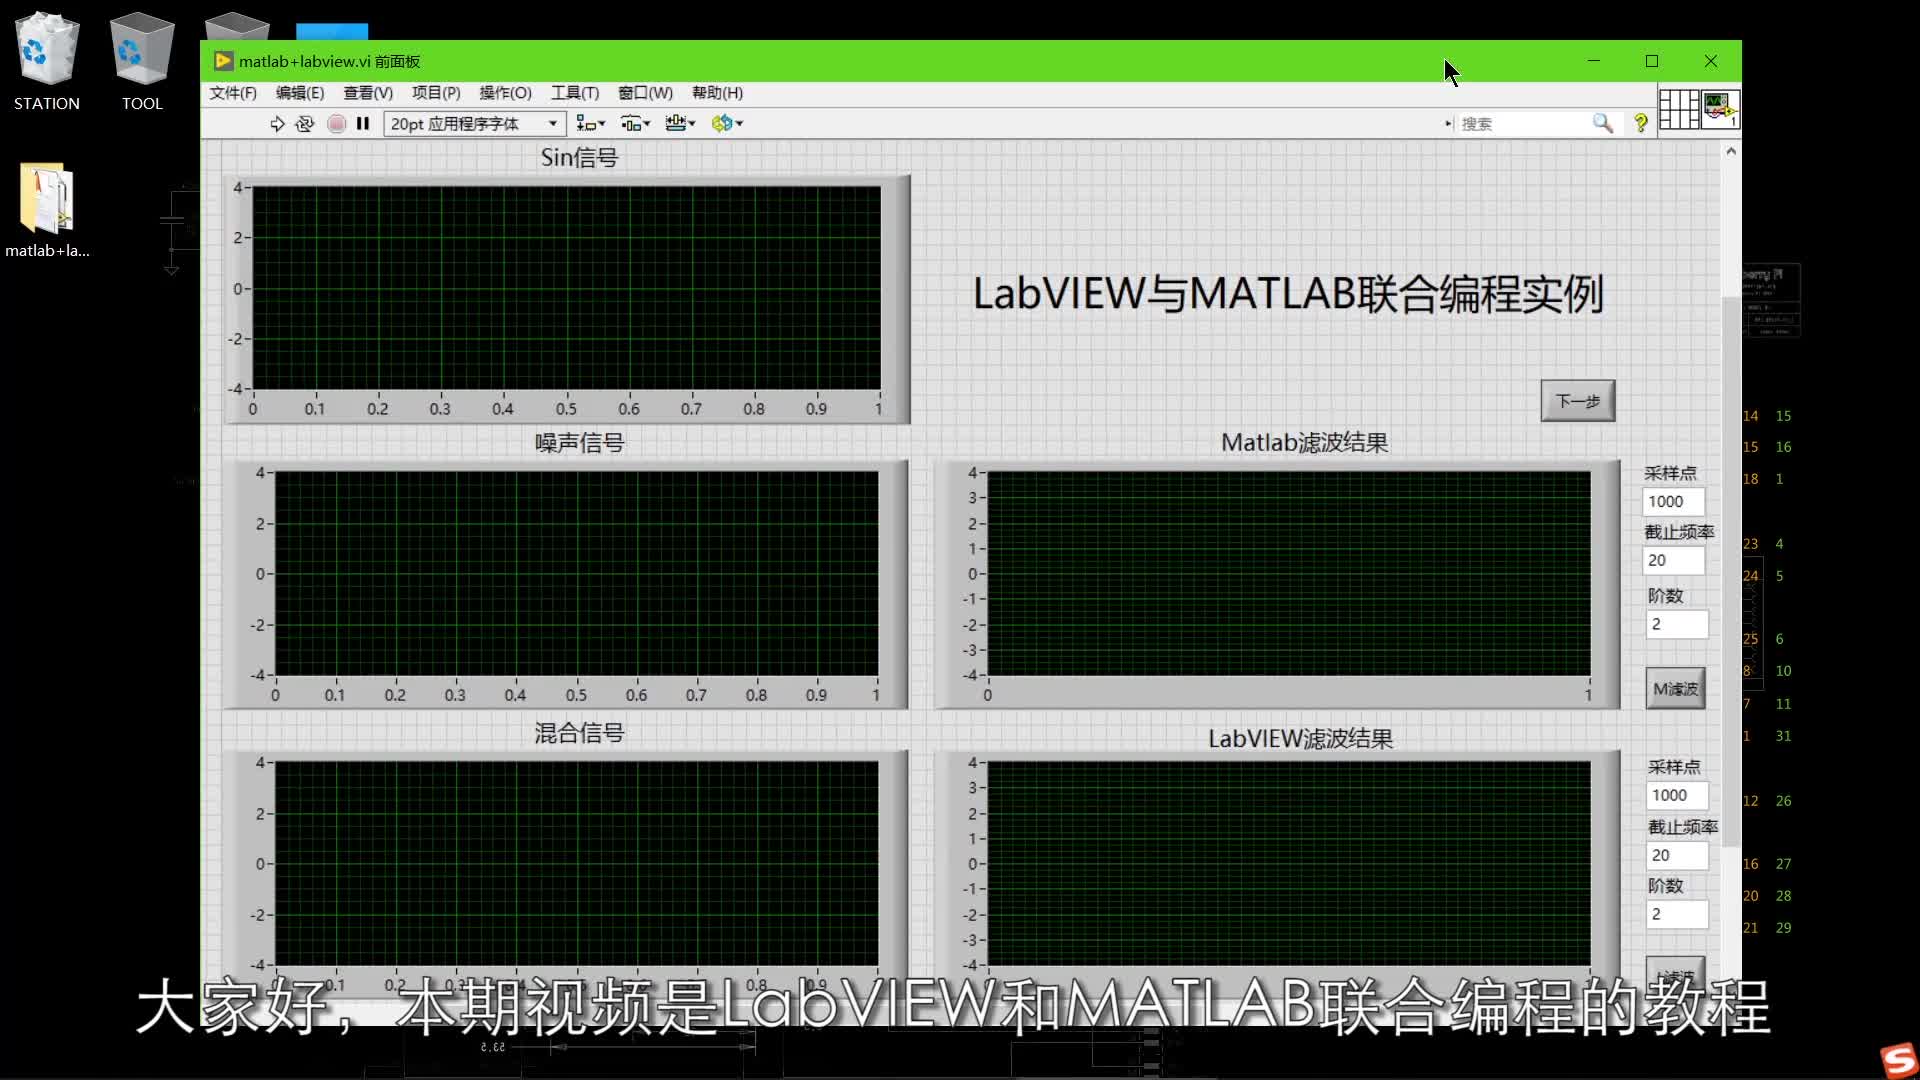 #跟著UP主一起創作吧 #開源集結號 LabVIEW設計：LabVIEW和MATLAB聯合編程